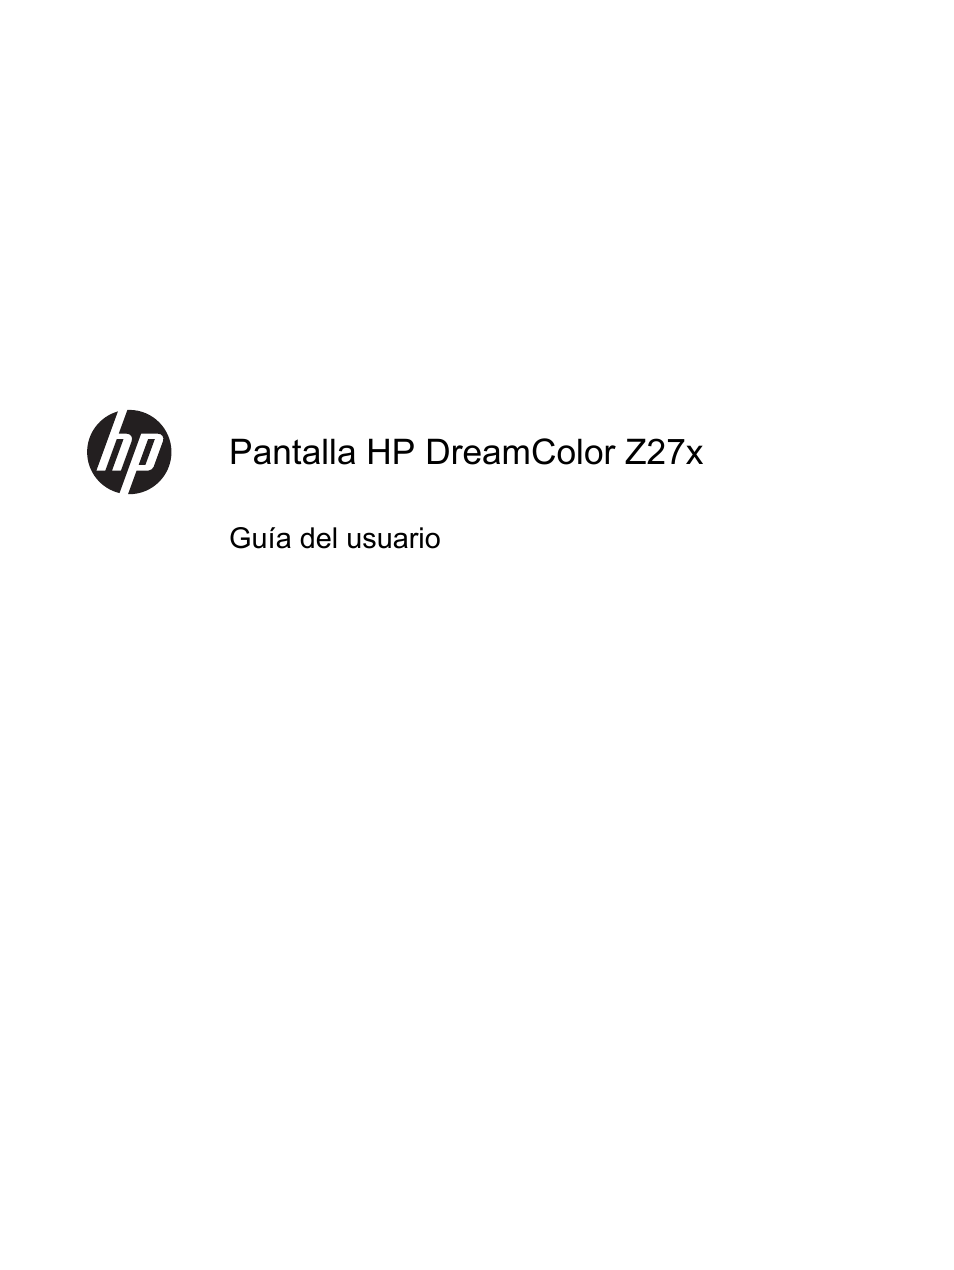 HP Pantalla profesional HP DreamColor Z27x Manual del usuario | Páginas: 81